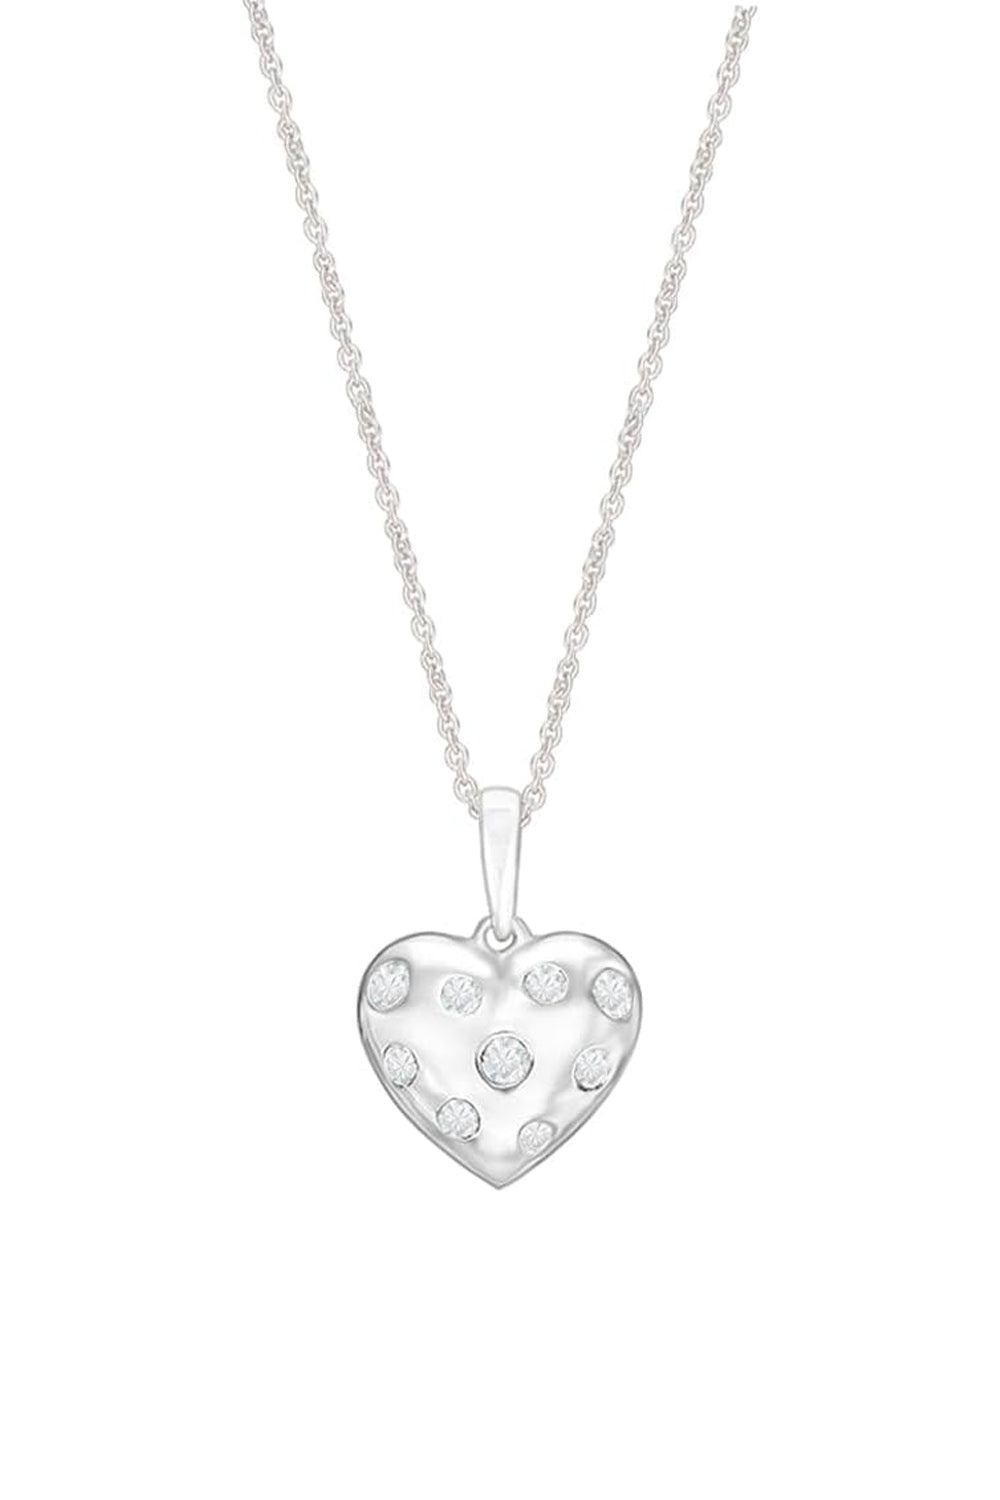 White Gold Color Diamond Heart Pendant Necklace, Pendant Necklaces